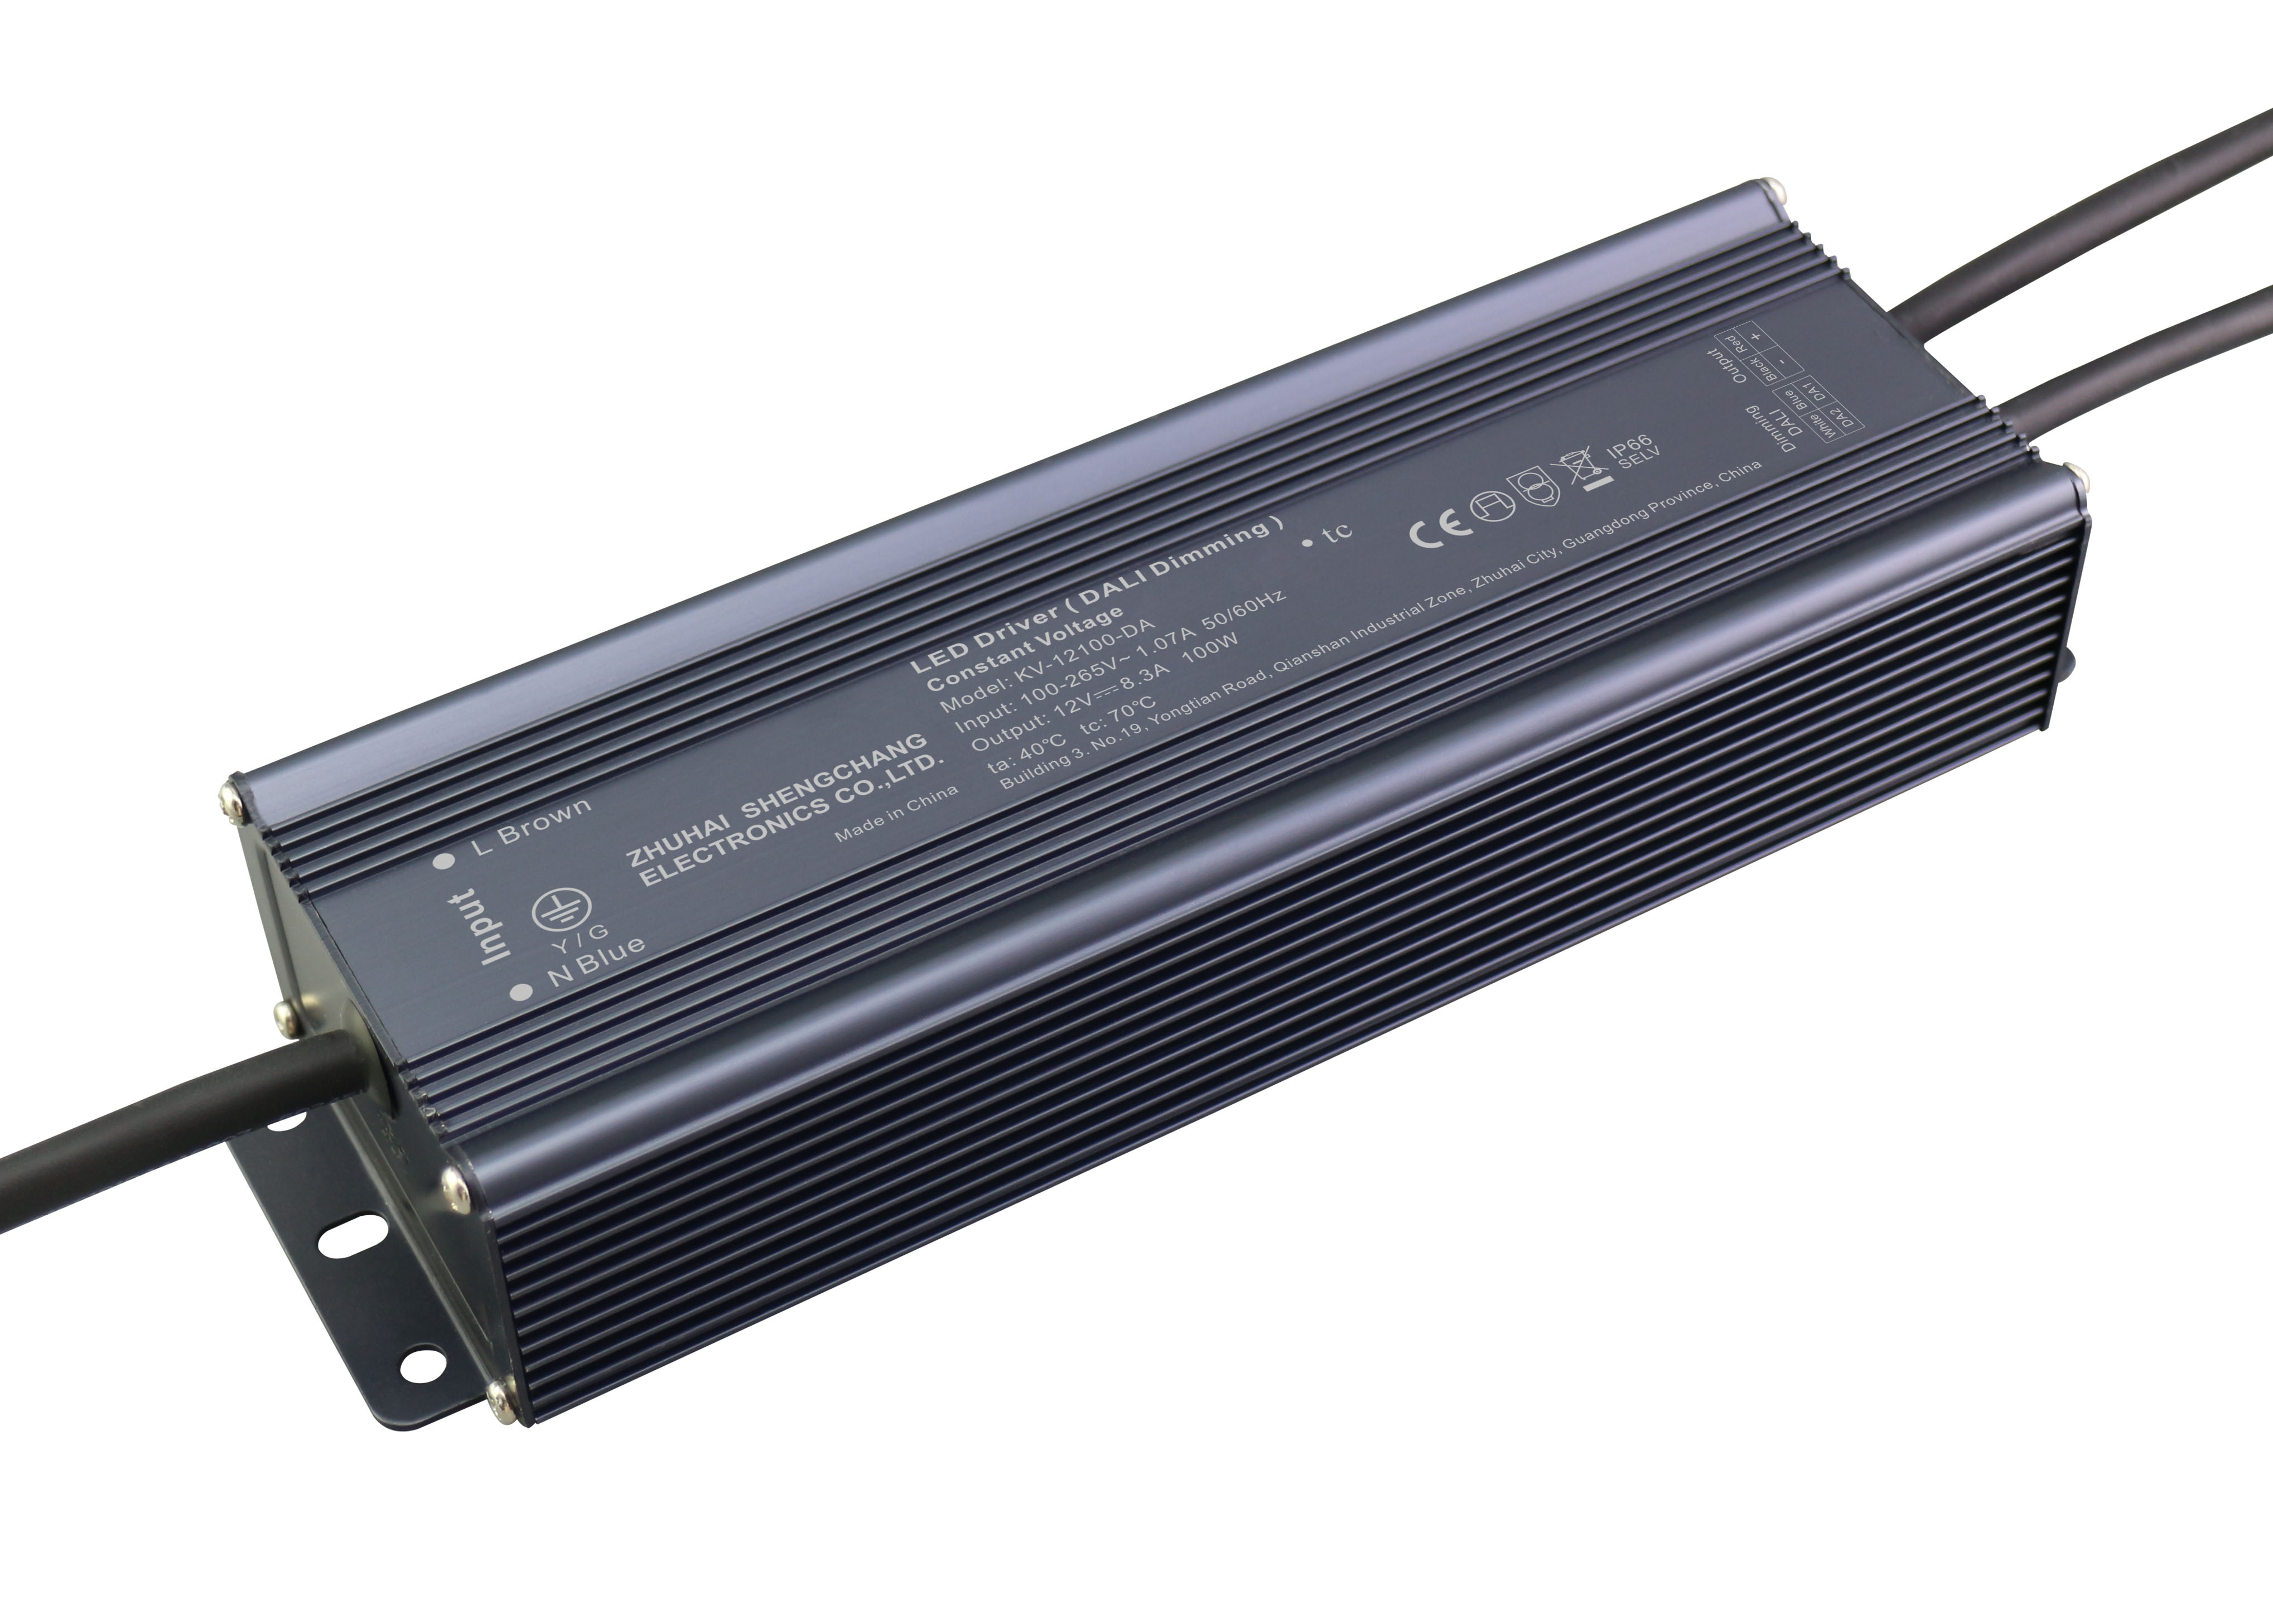 KV-DA Series 100W DALI constant voltage dimmable LED driver